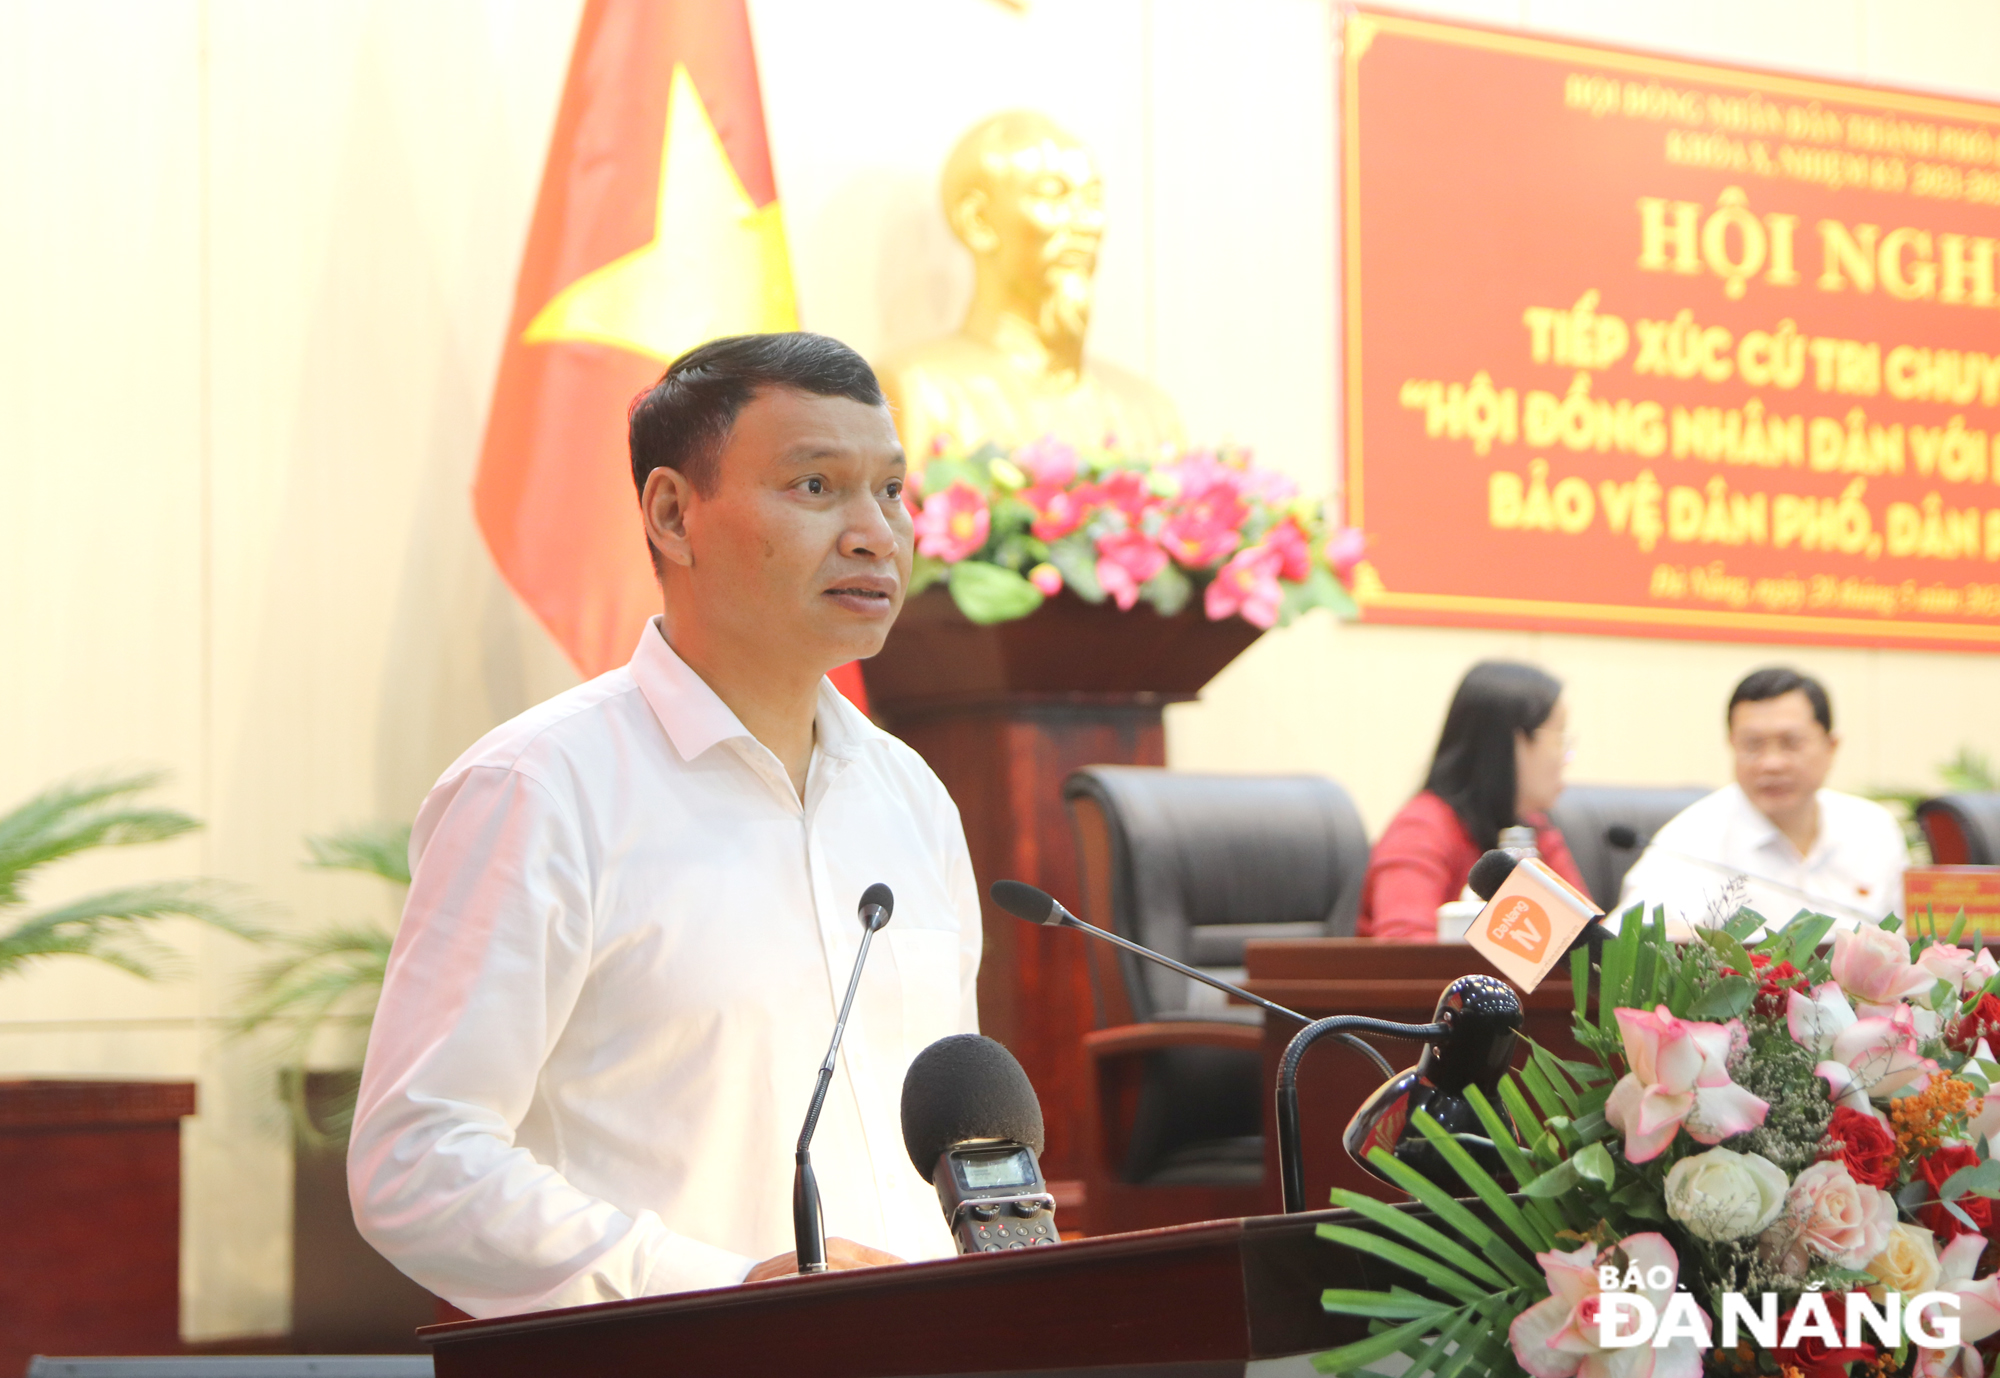 Phó Chủ tịch Thường trực UBND thành phố Hồ Kỳ Minh tiếp thu, giải trình tại hội nghị. Ảnh: TRỌNG HUY